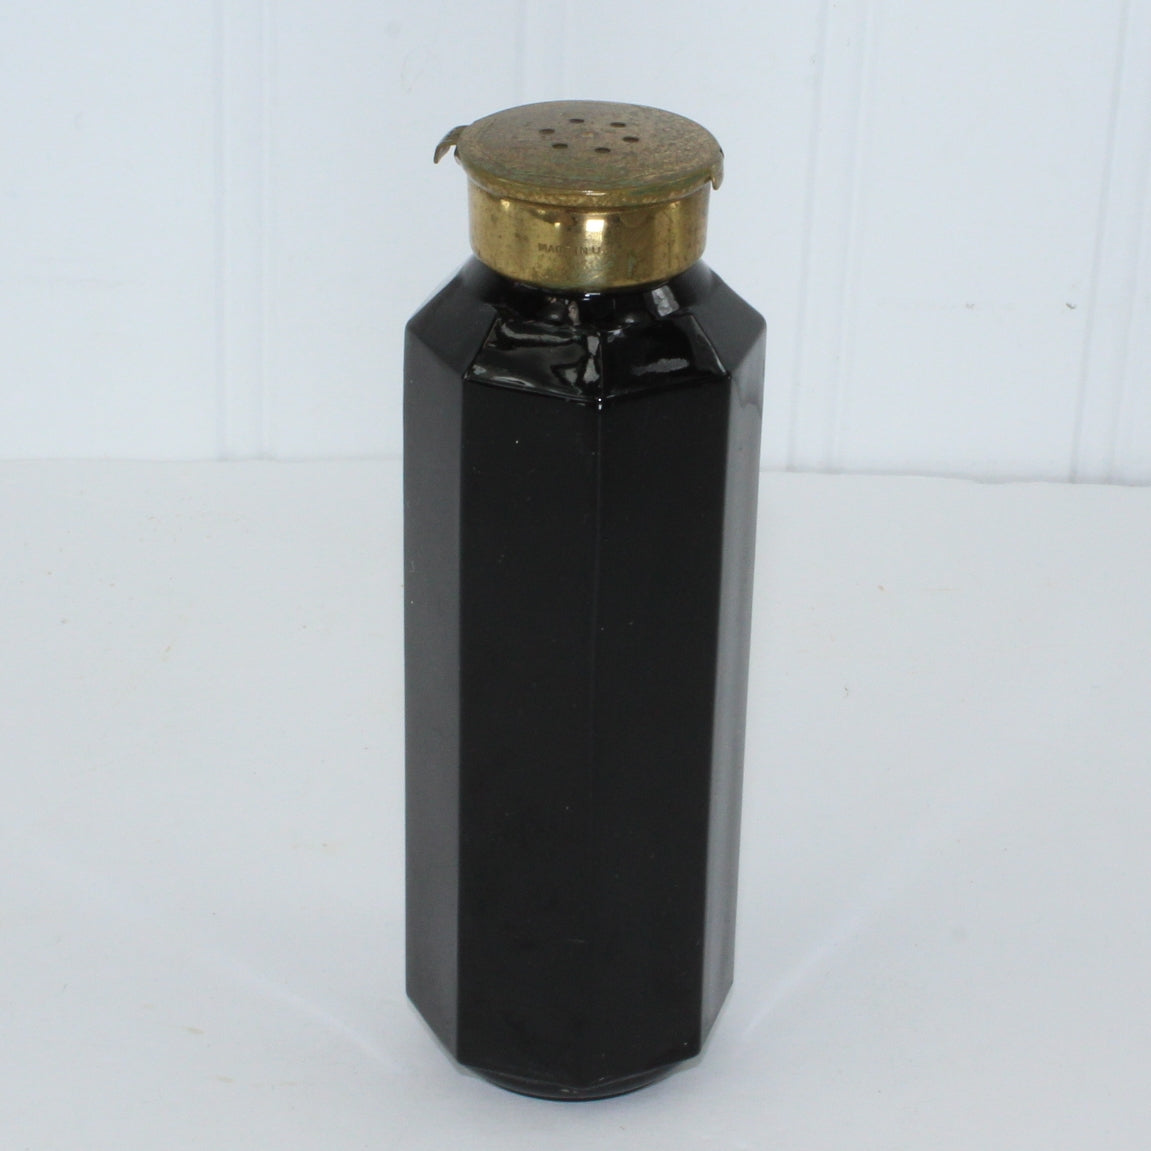 Le Debut Noir Richard Hudnut 1927 Talc Bottle Black Glass Octagonal Unique Closure